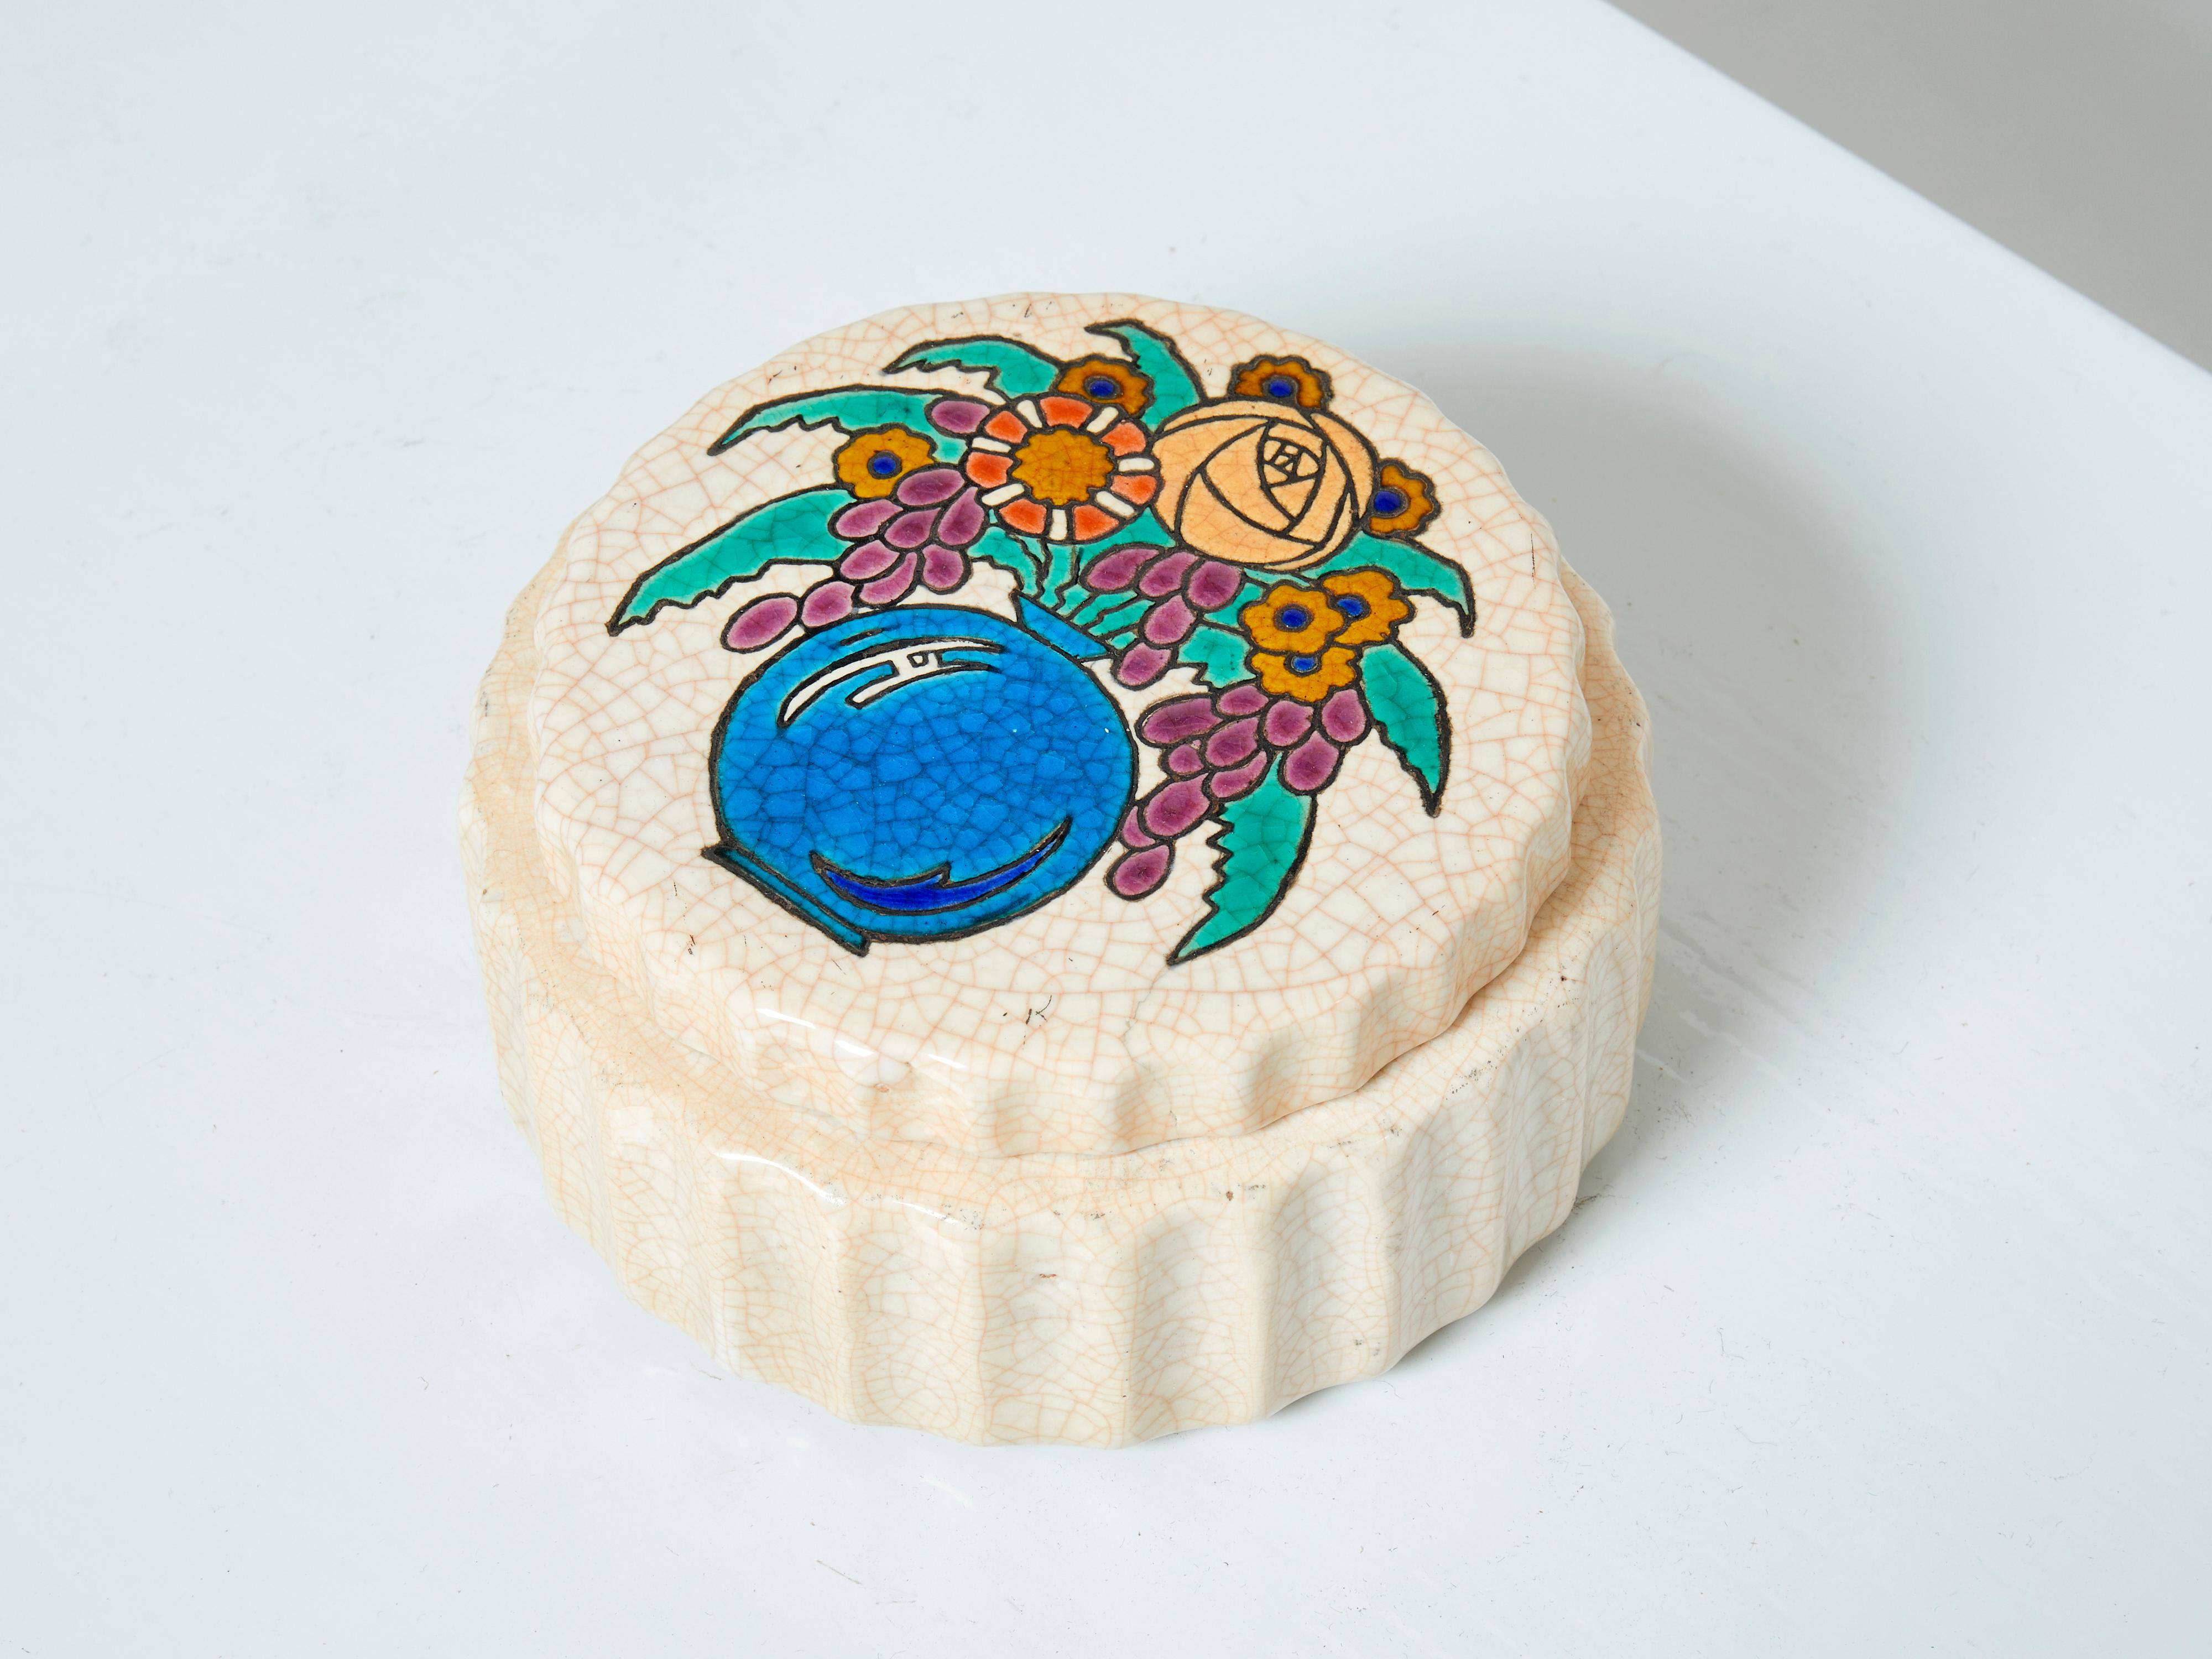 Rare grande boîte ronde cannelée en céramique Art déco des Faïenceries et Emaux de Longwy réalisée vers 1930. Cette belle boîte représente un vase coloré avec des fleurs. Le beige crème présente la glaçure craquelée caractéristique de Longwy. La